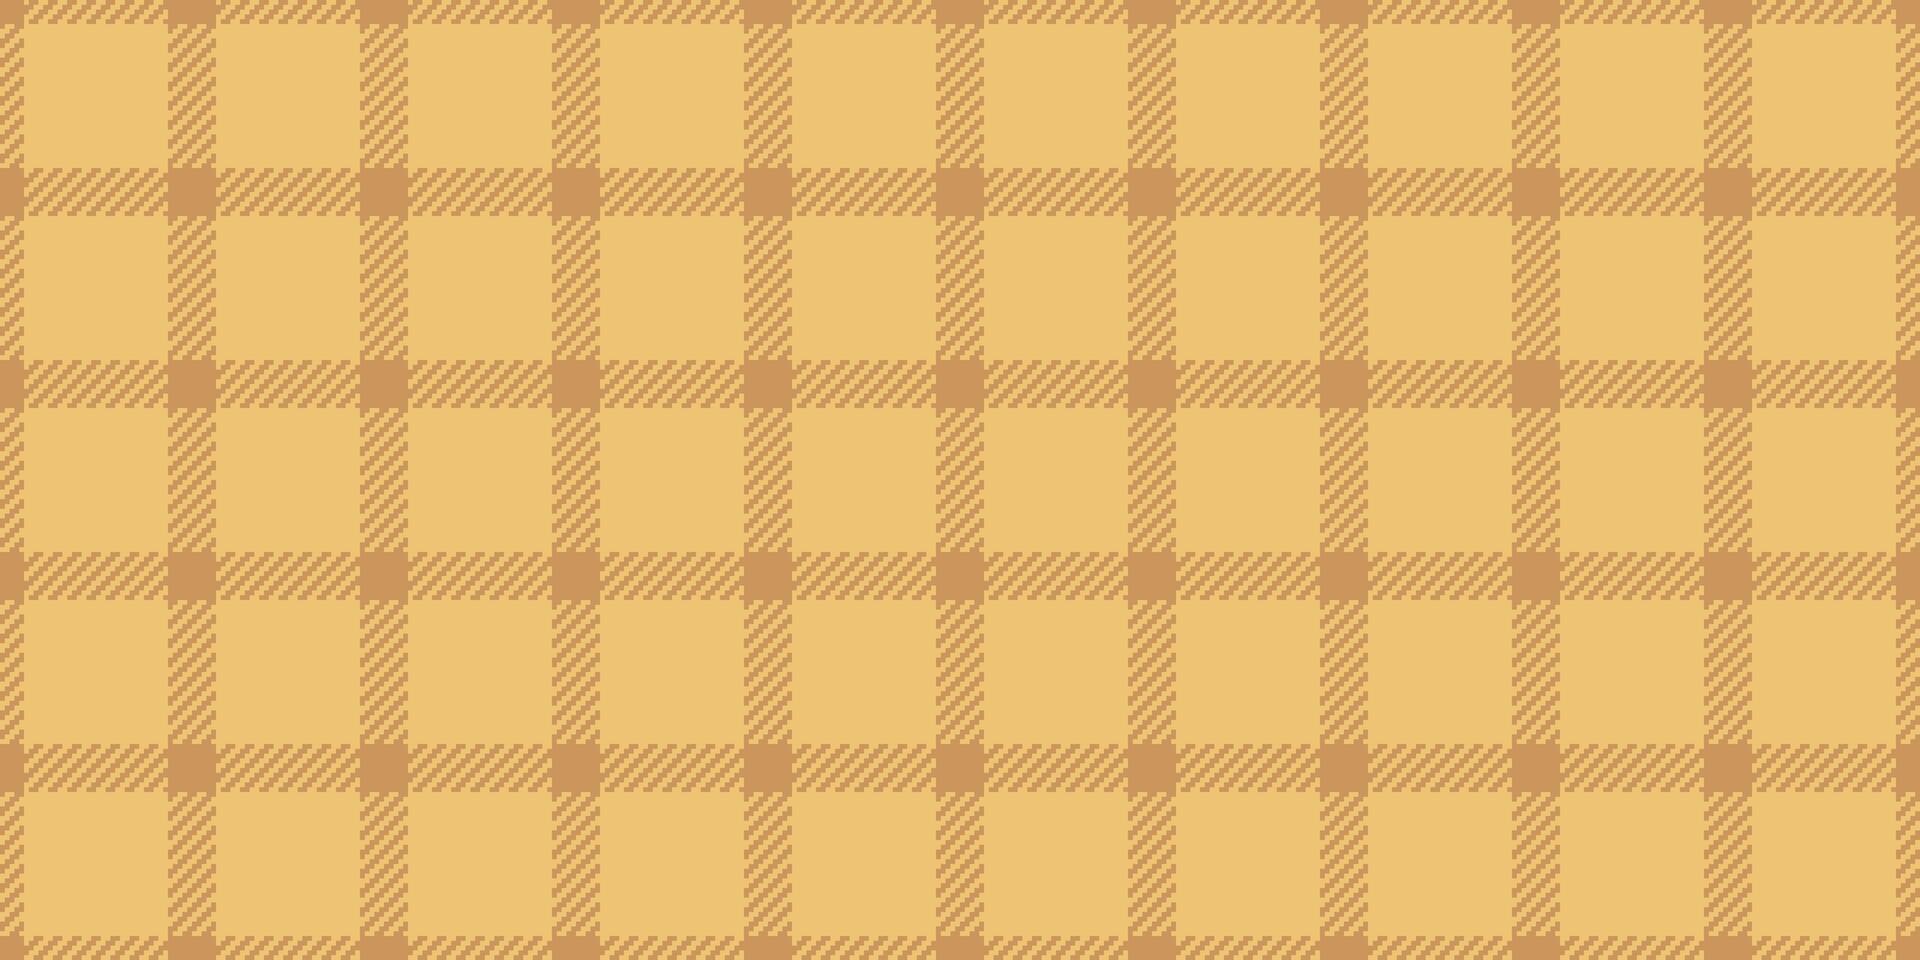 wijnoogst patroon kleding stof plaid, golf naadloos structuur textiel. decor achtergrond vector Schotse ruit controleren in oranje en amber kleuren.